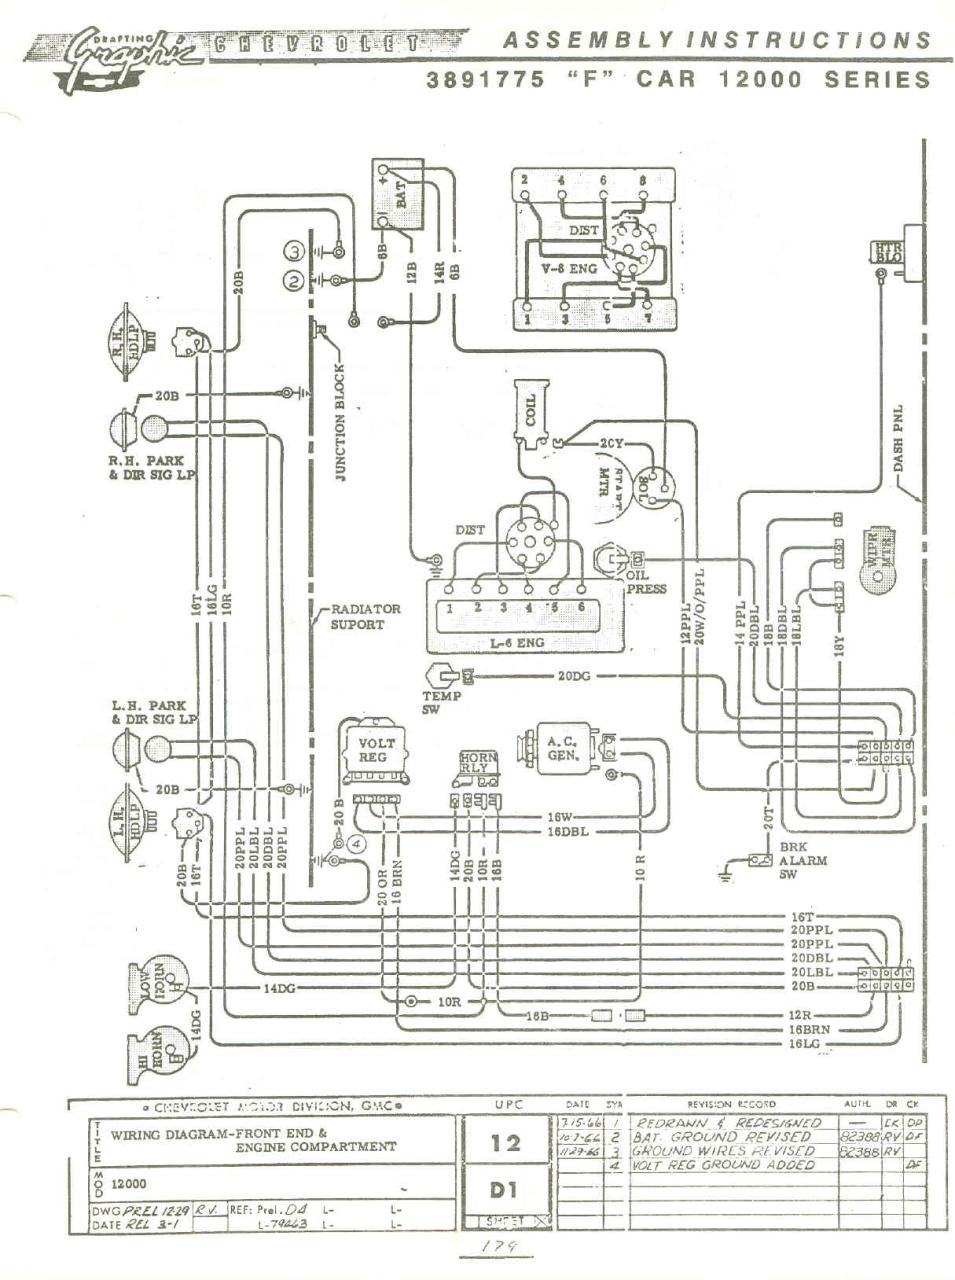 1980 Gm Steering Column Wiring Diagram